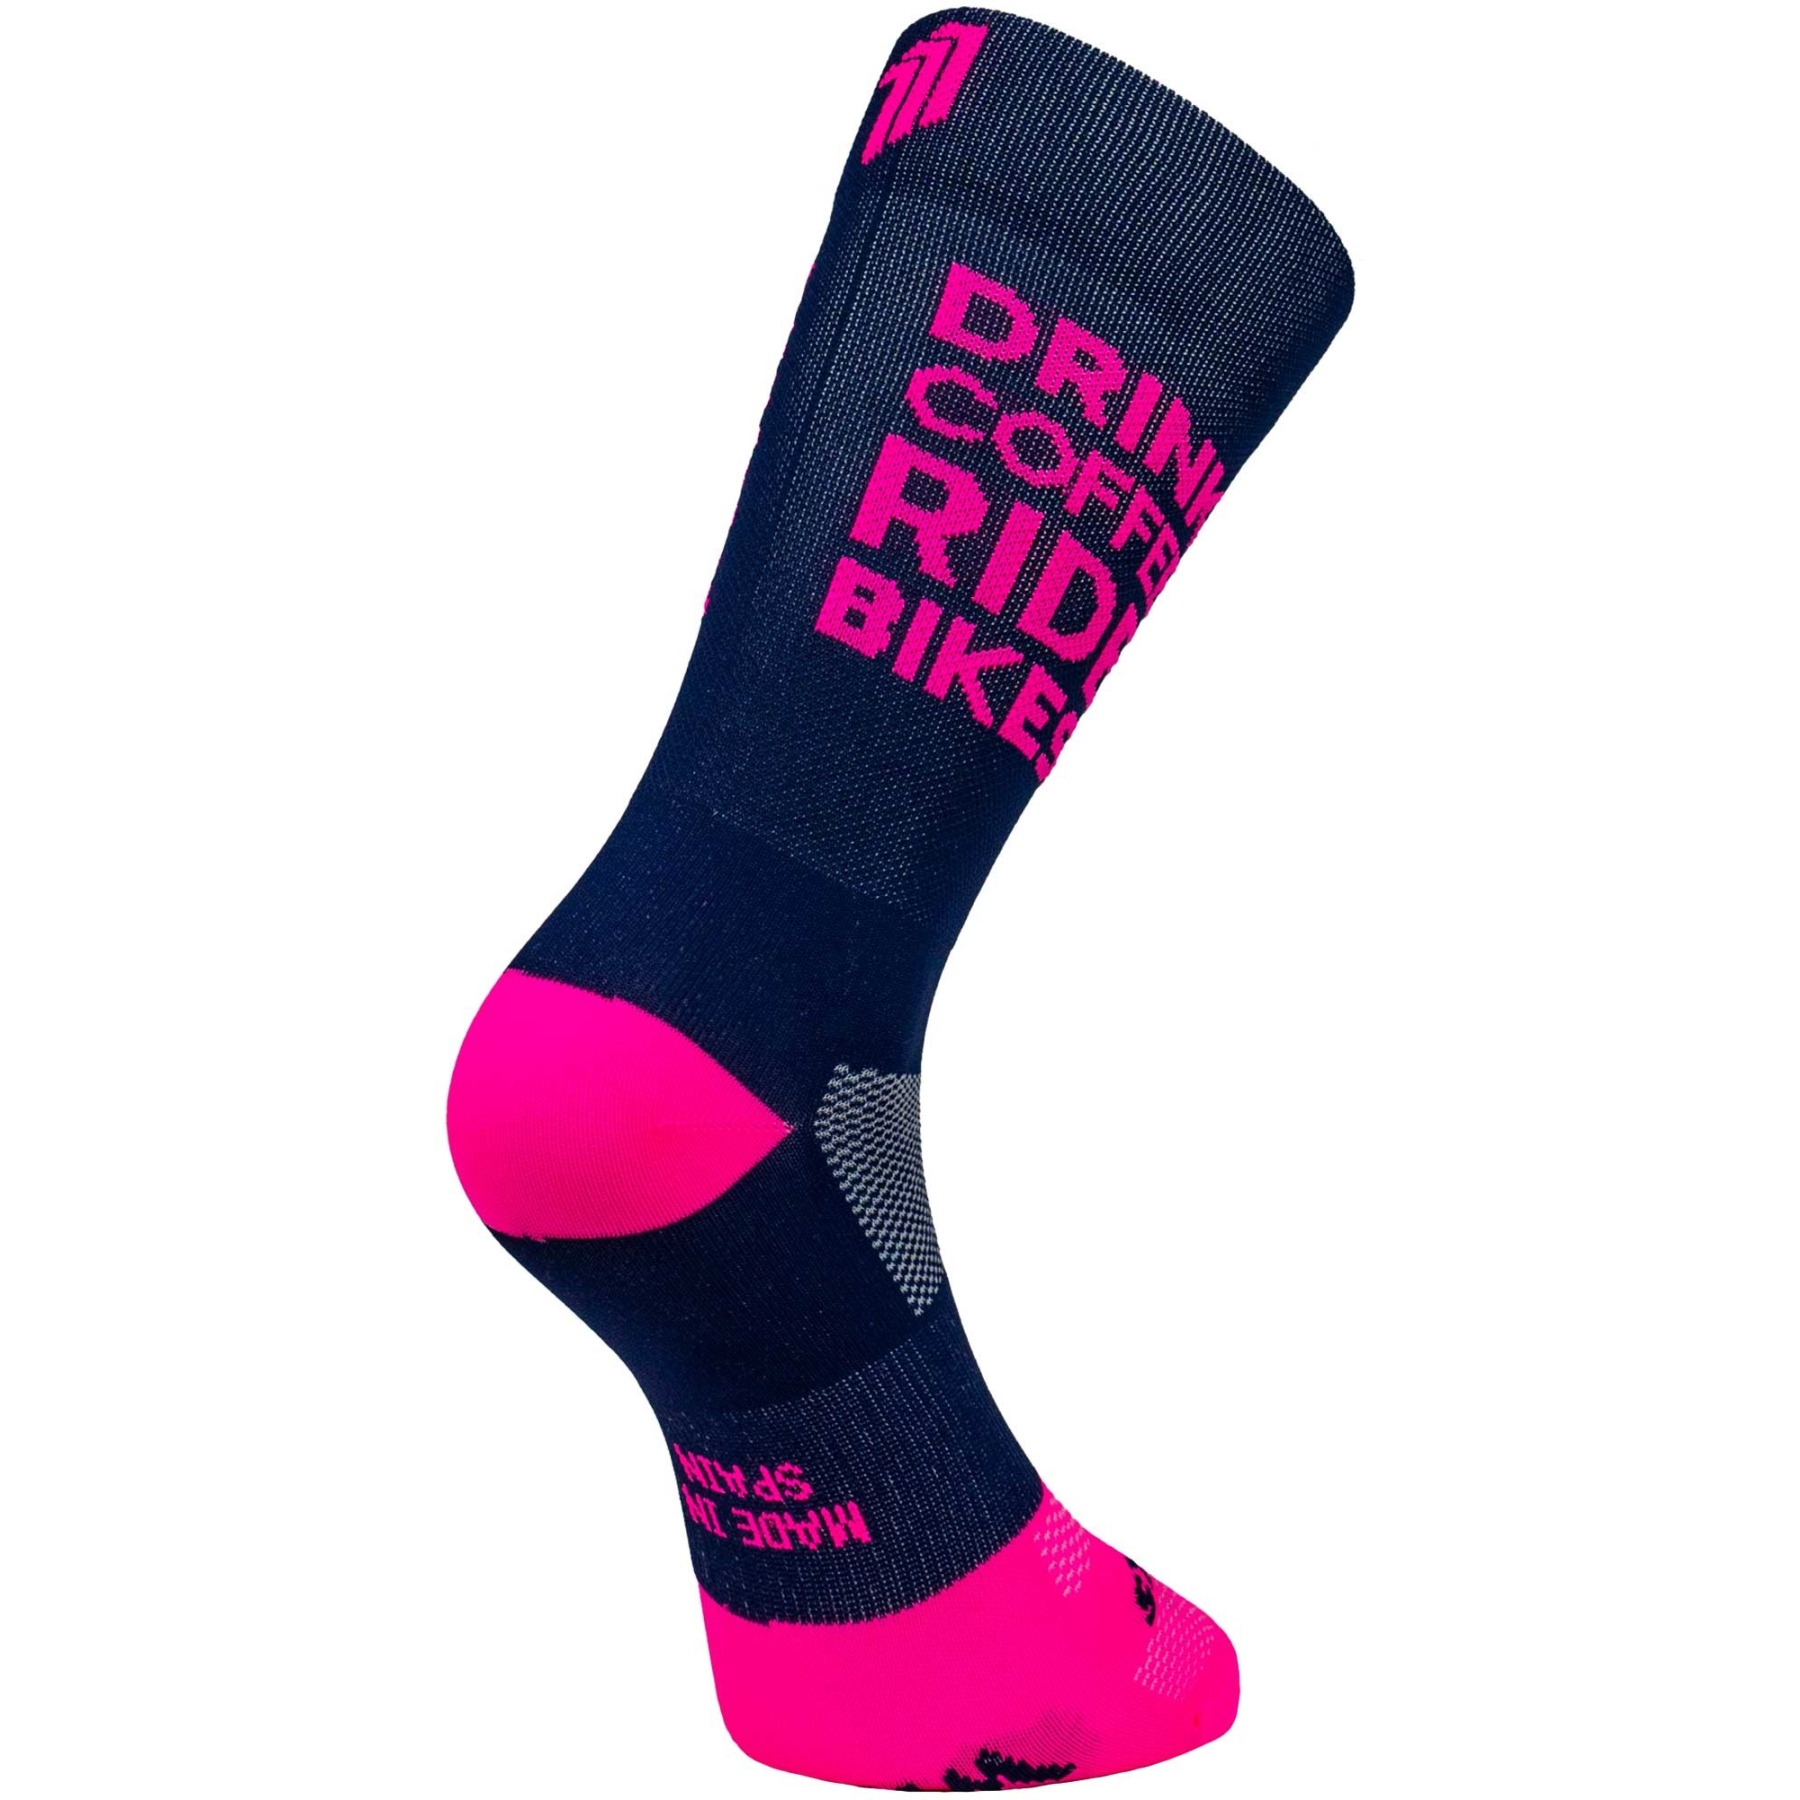 Produktbild von SPORCKS Cycling Socken - Drink Coffee Pink